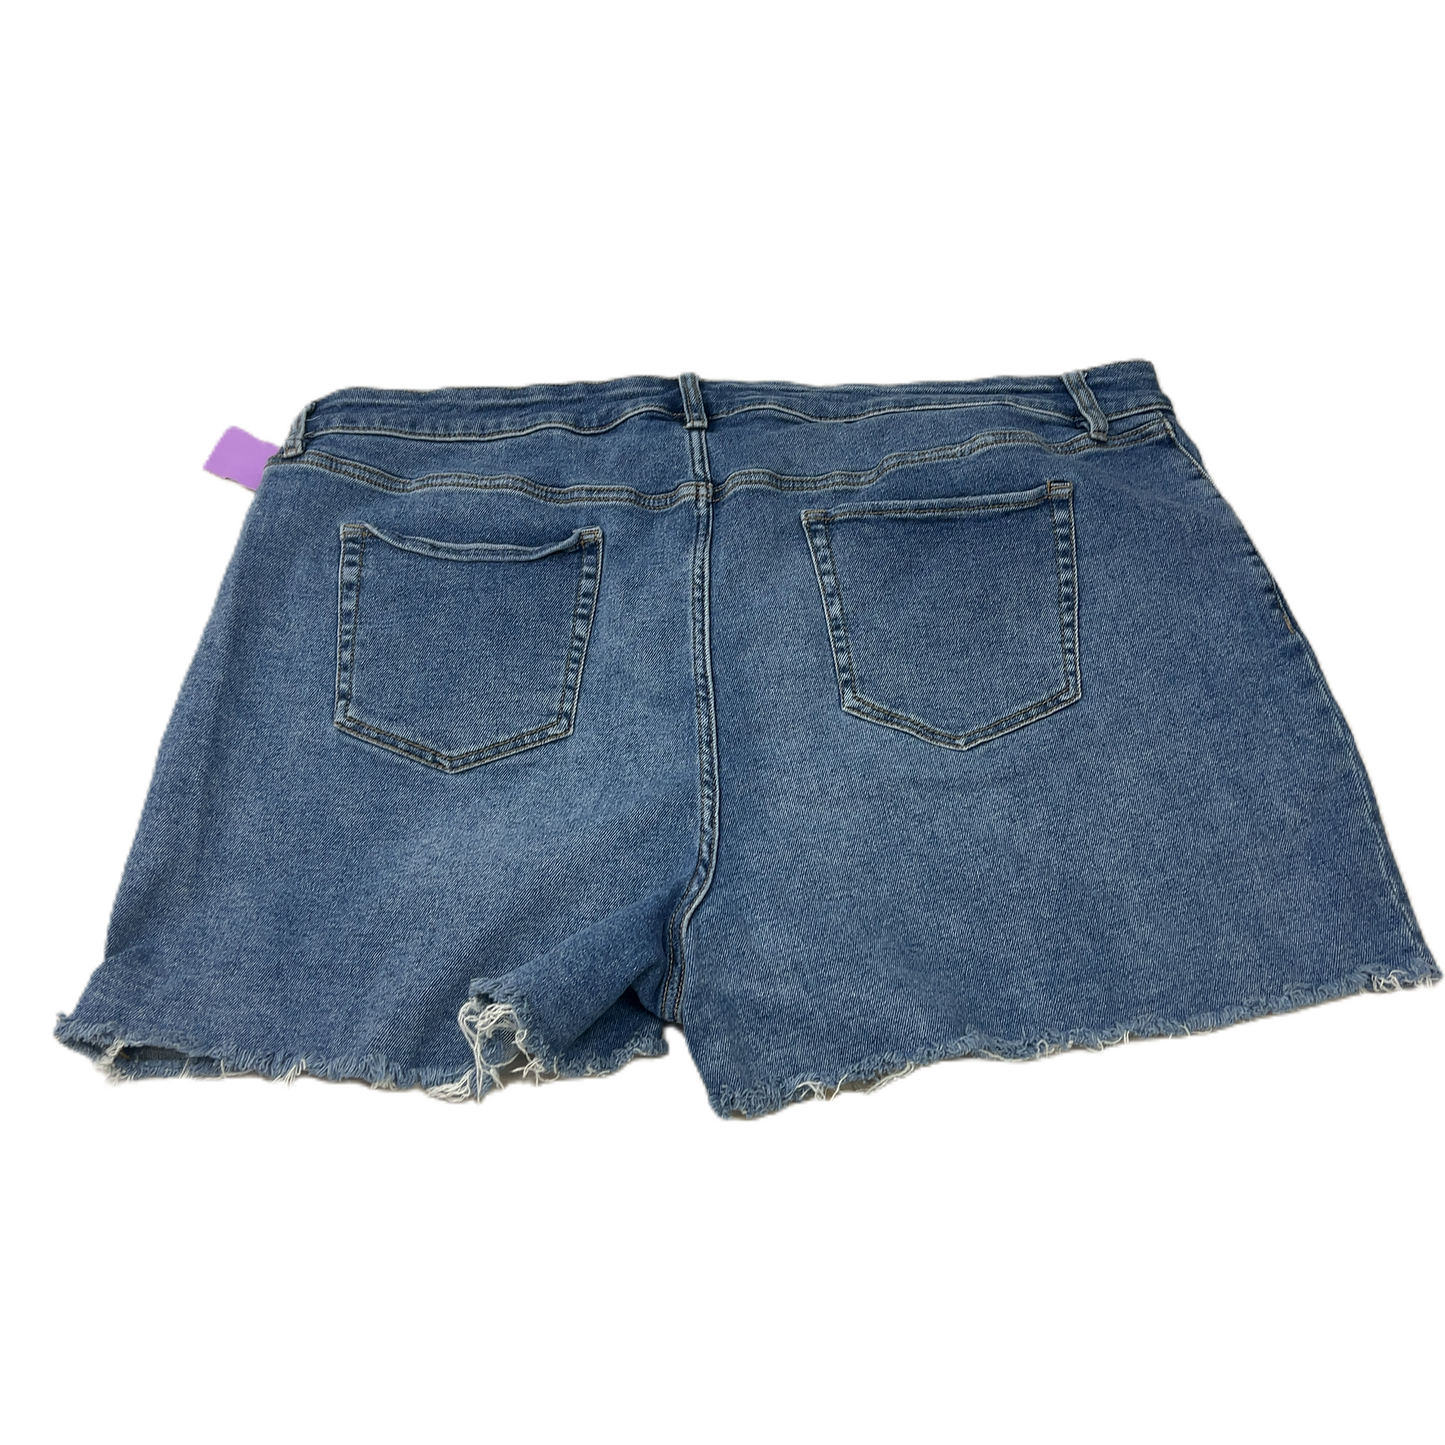 Shorts By Ava & Viv  Size: 24